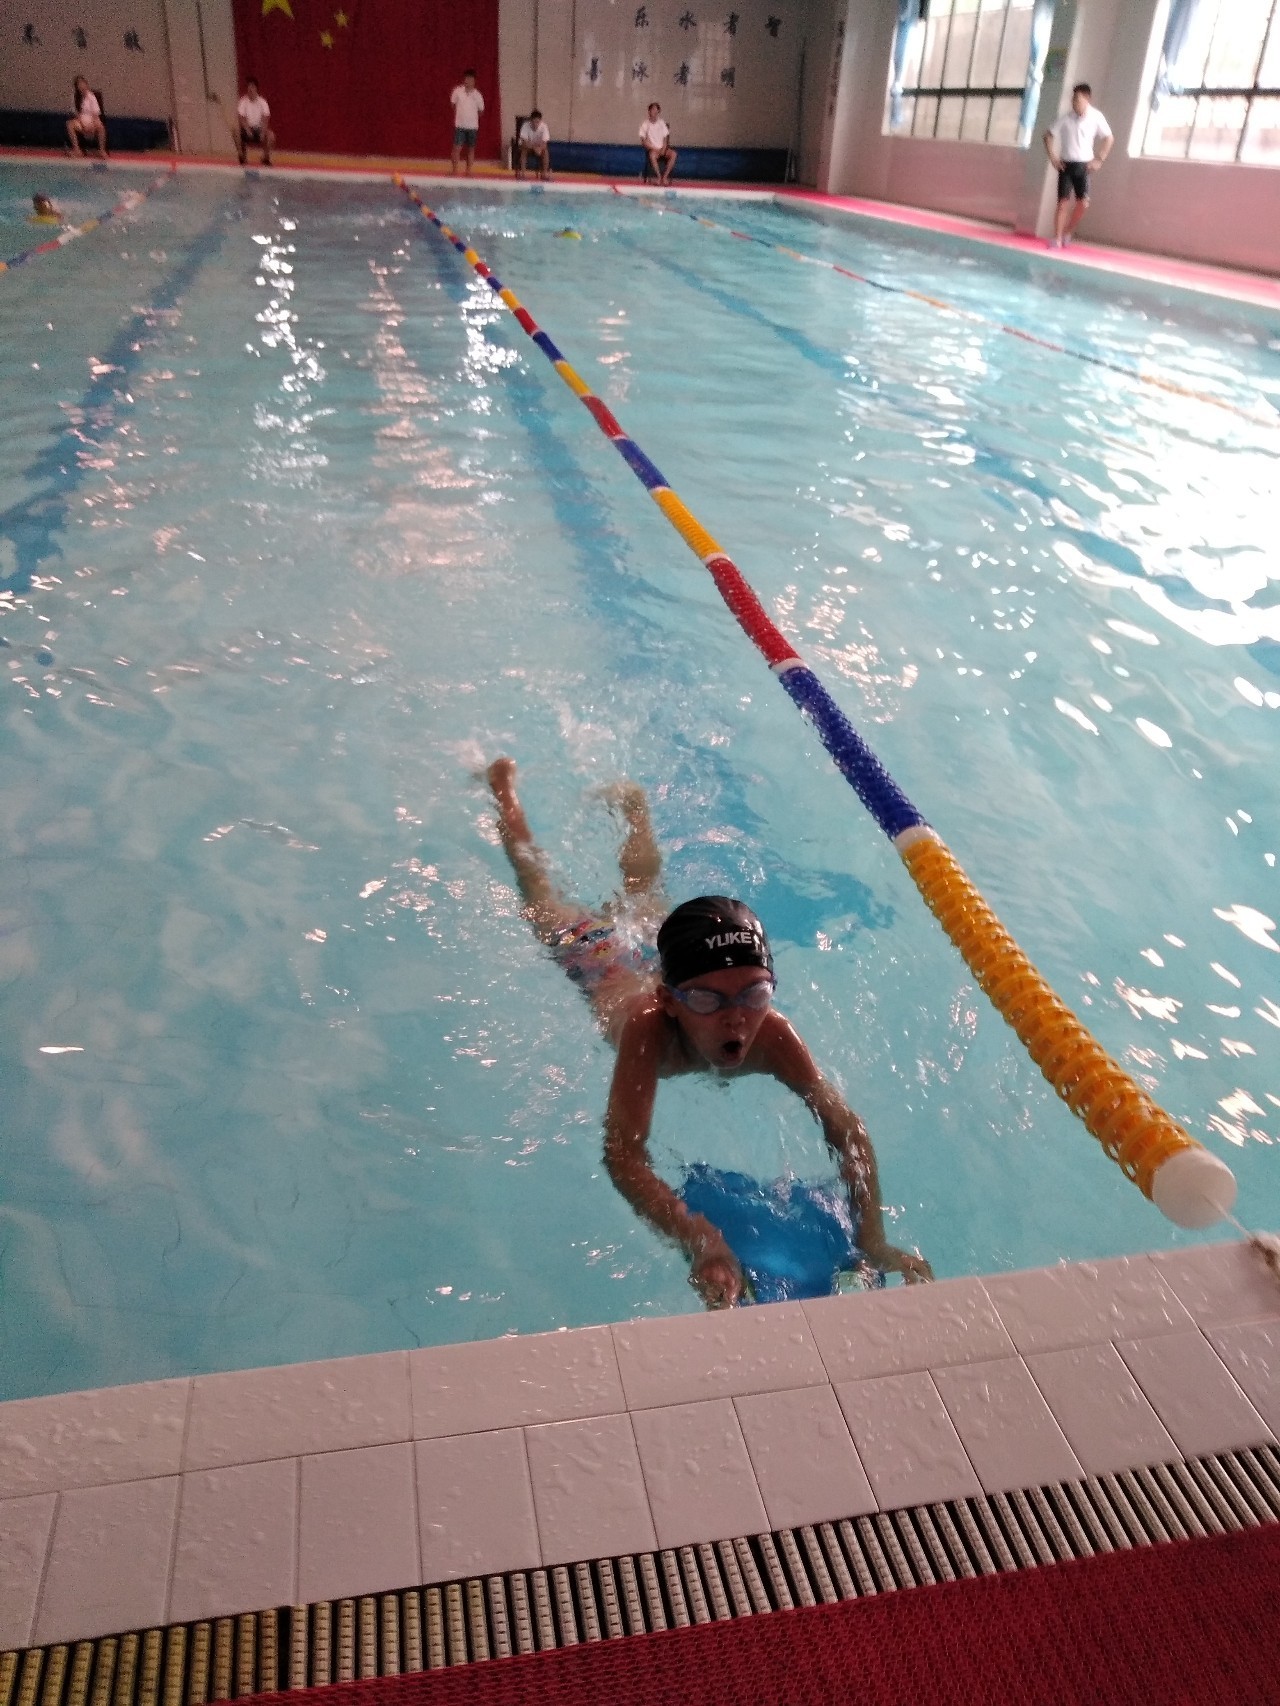 奋力拼搏 勇创佳绩——县实验小学在市游泳锦标赛中获小学组团体第一